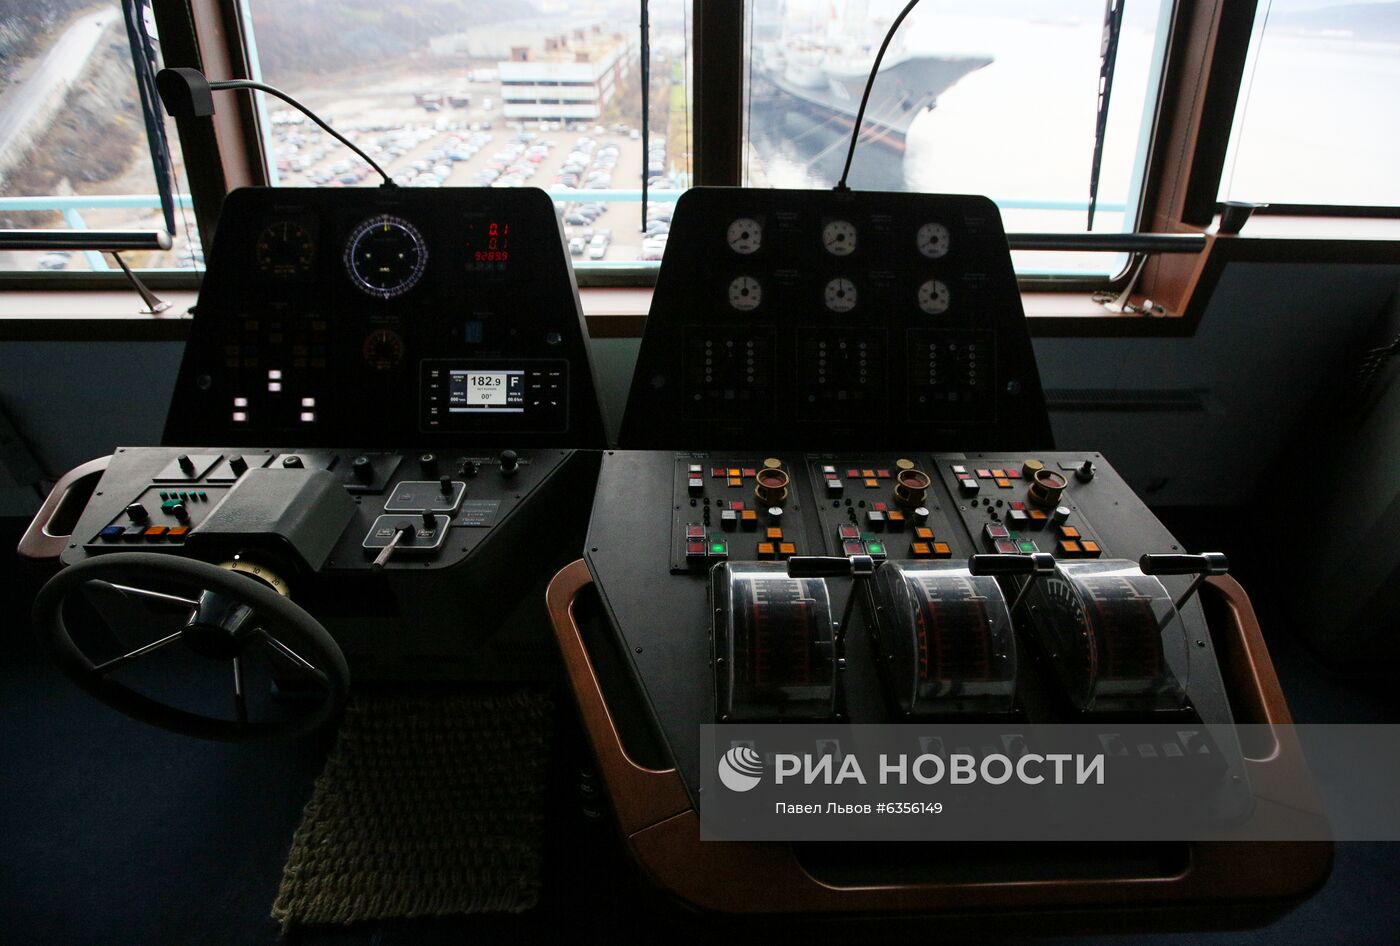 Прибытие атомного ледокола "Арктика" в Мурманск